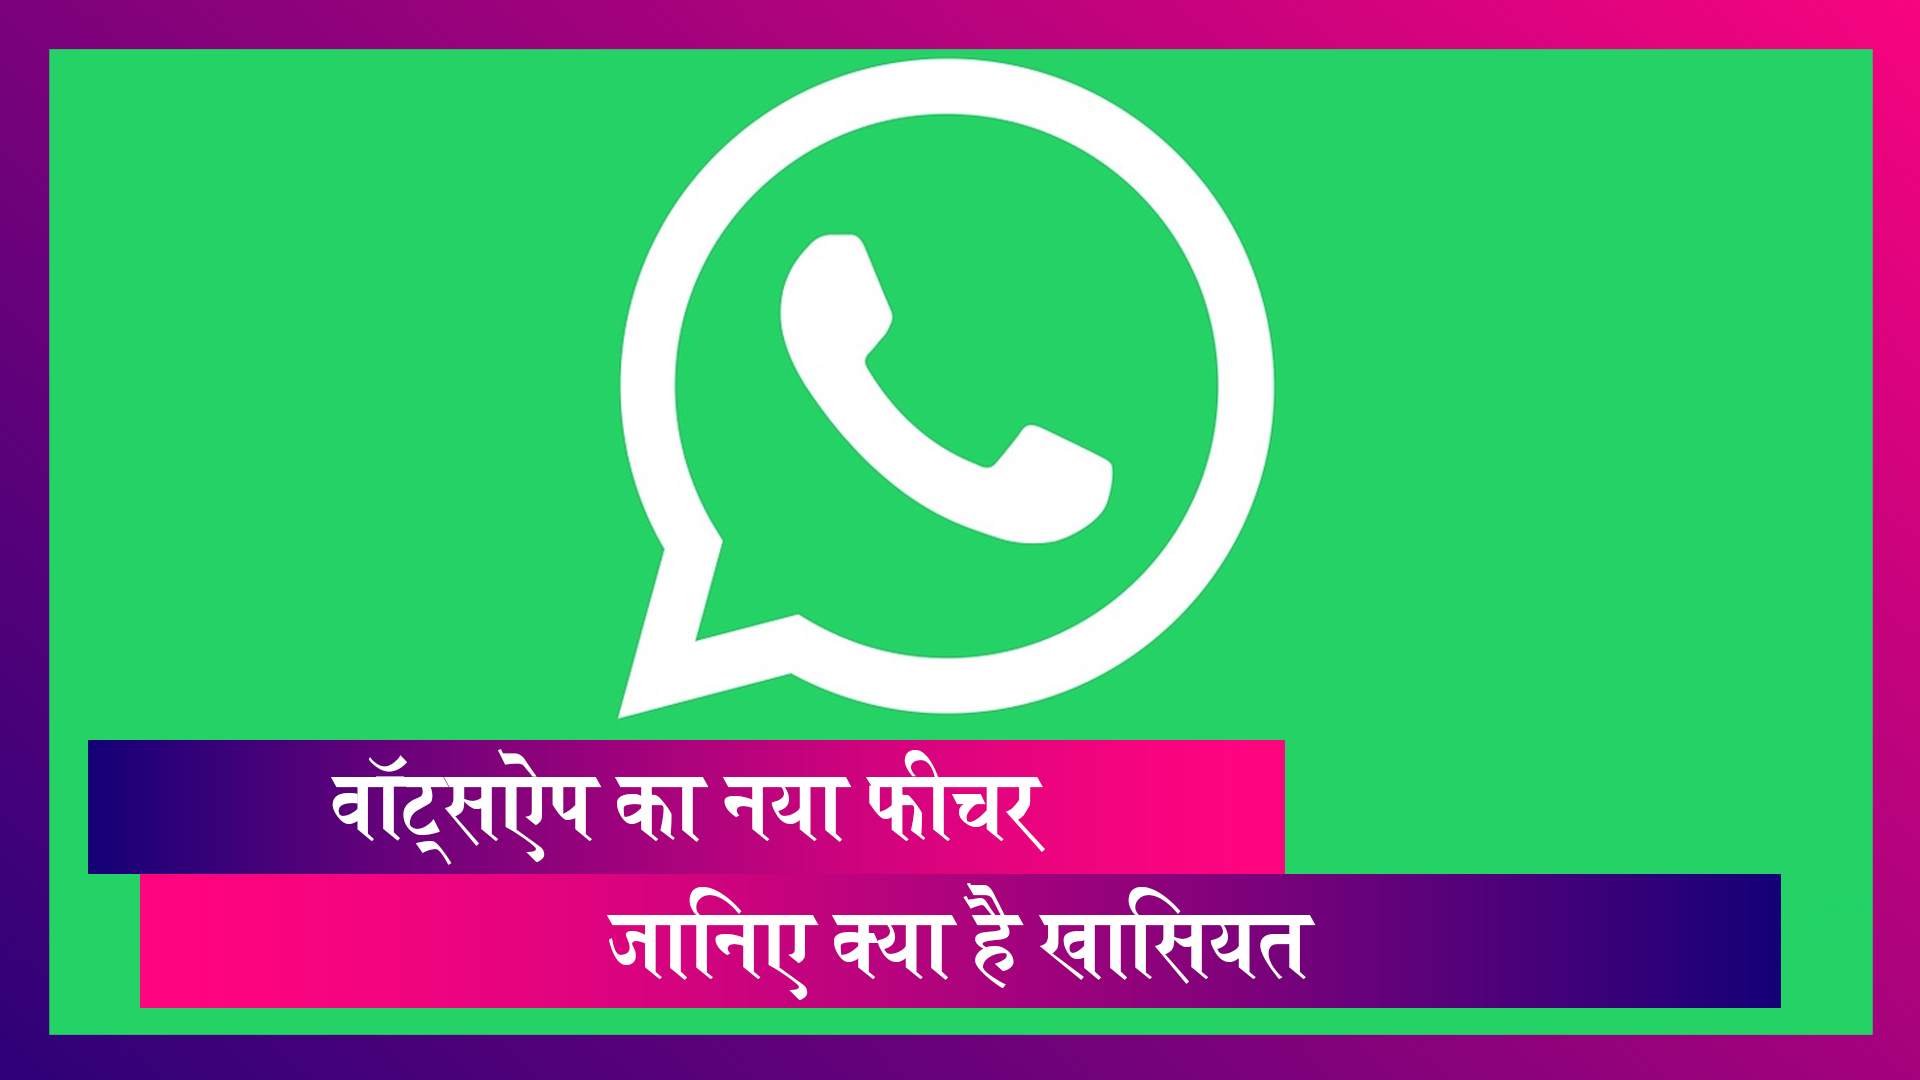 WhatsApp: वॉट्सऐप का नया प्राइवेसी फीचर, एंड्रॉयड और iOS यूजर्स के लिए है ये फीचर